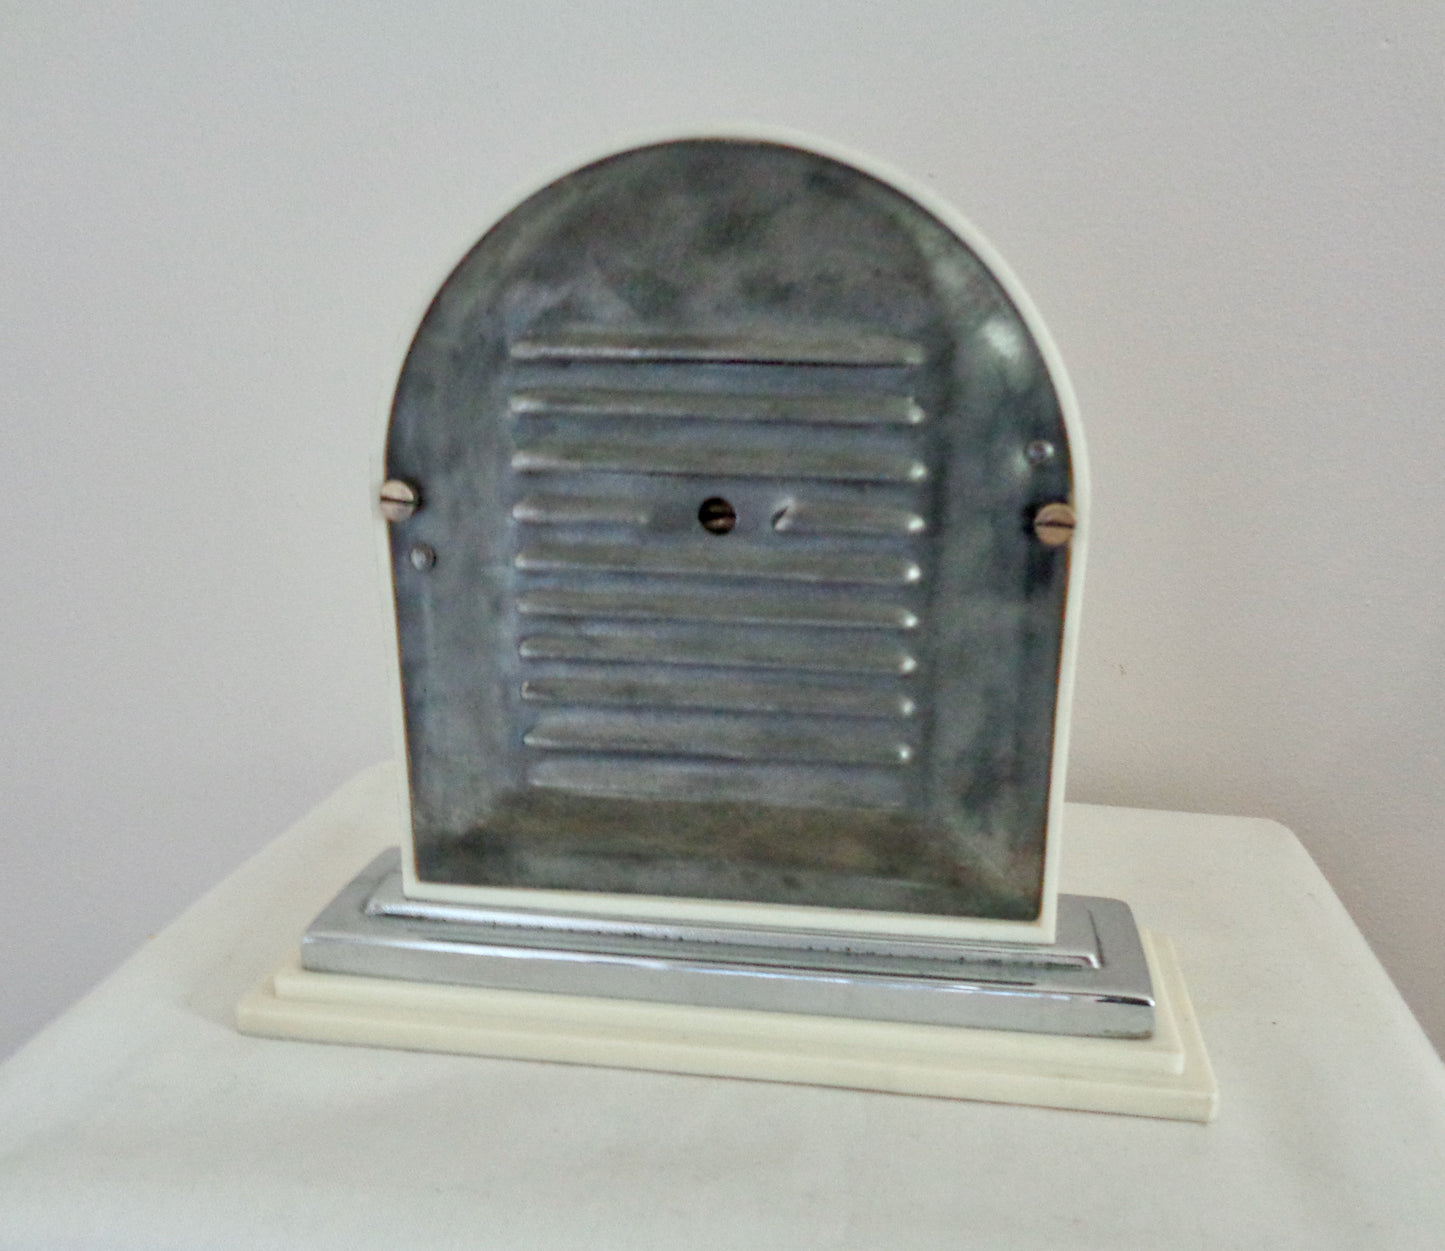 1930s Thermodial White Bakelite Bimetallic Thermometer